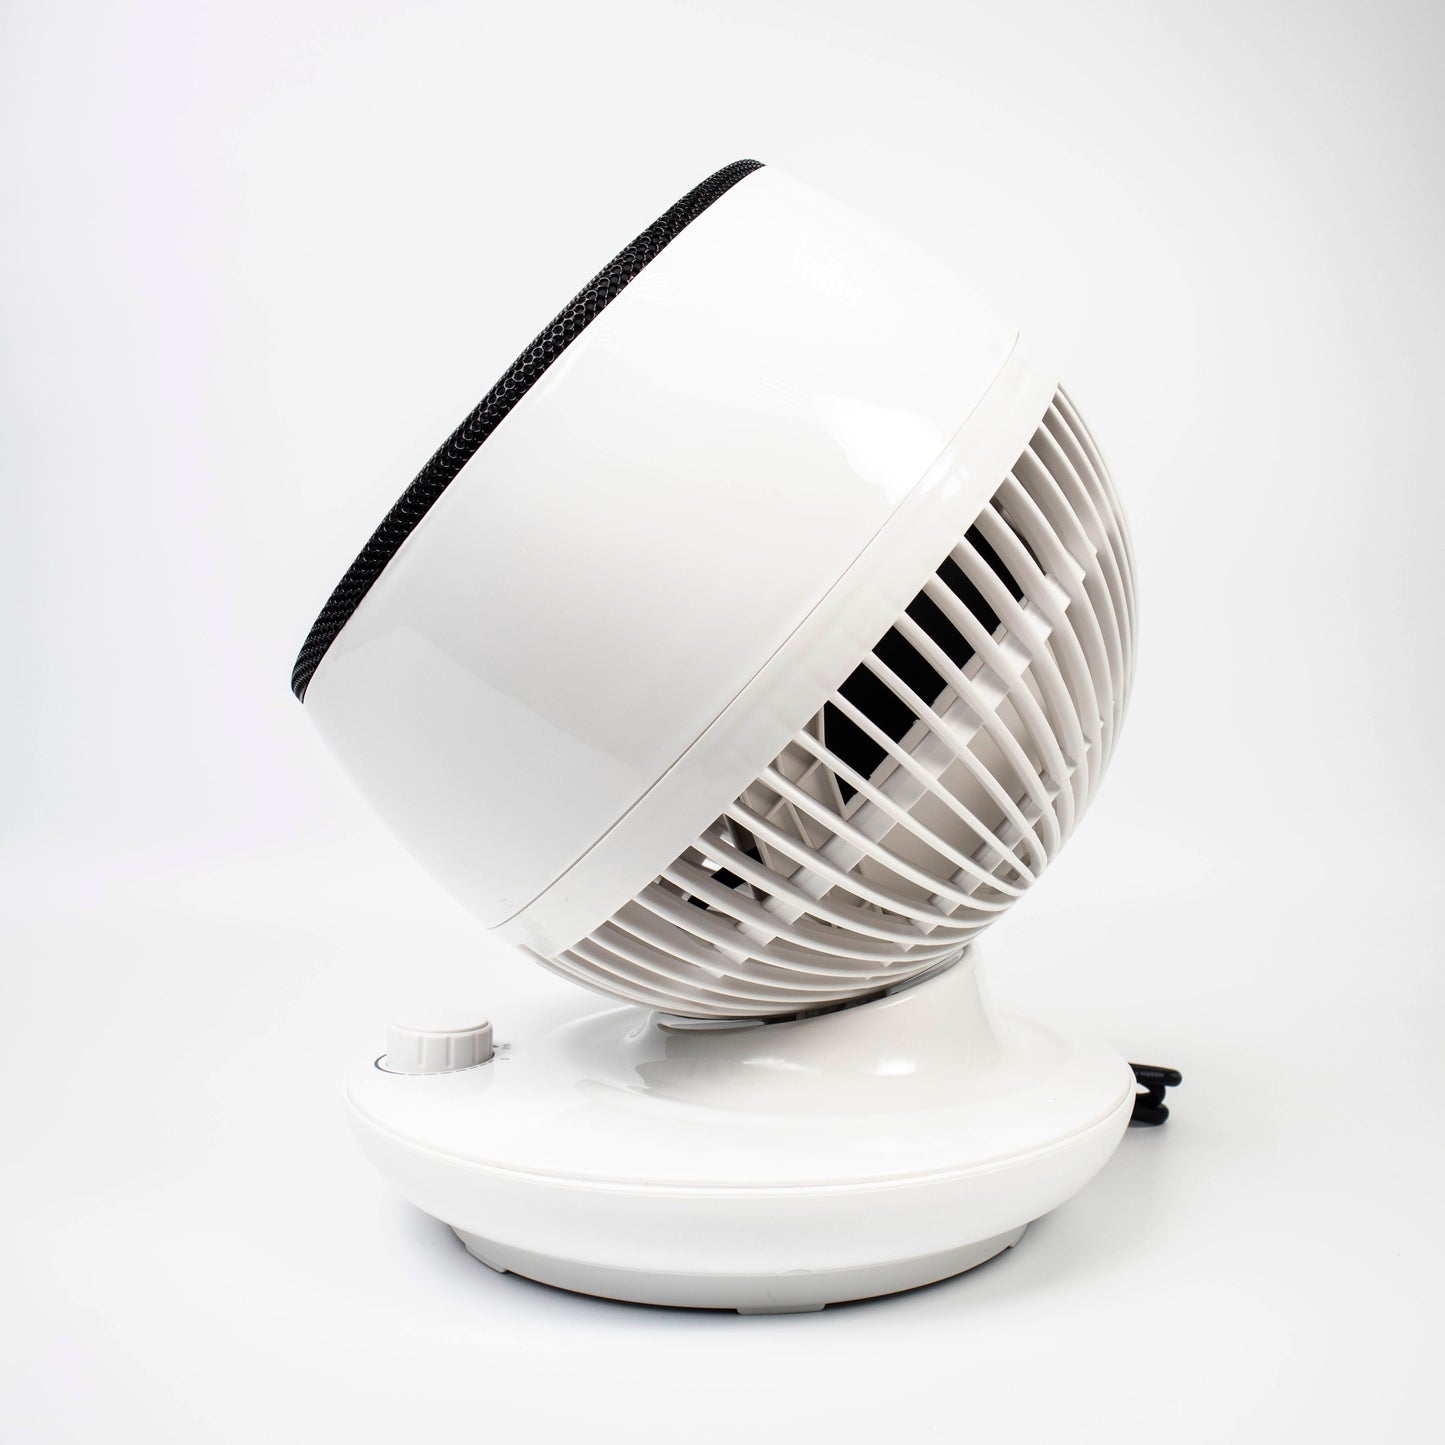 SOLMIRA® Calefactor Cerámico, Blanco, Bajo Consumo, Inclinable 90°, Control de Temperatura, Certificado CE y RoHS